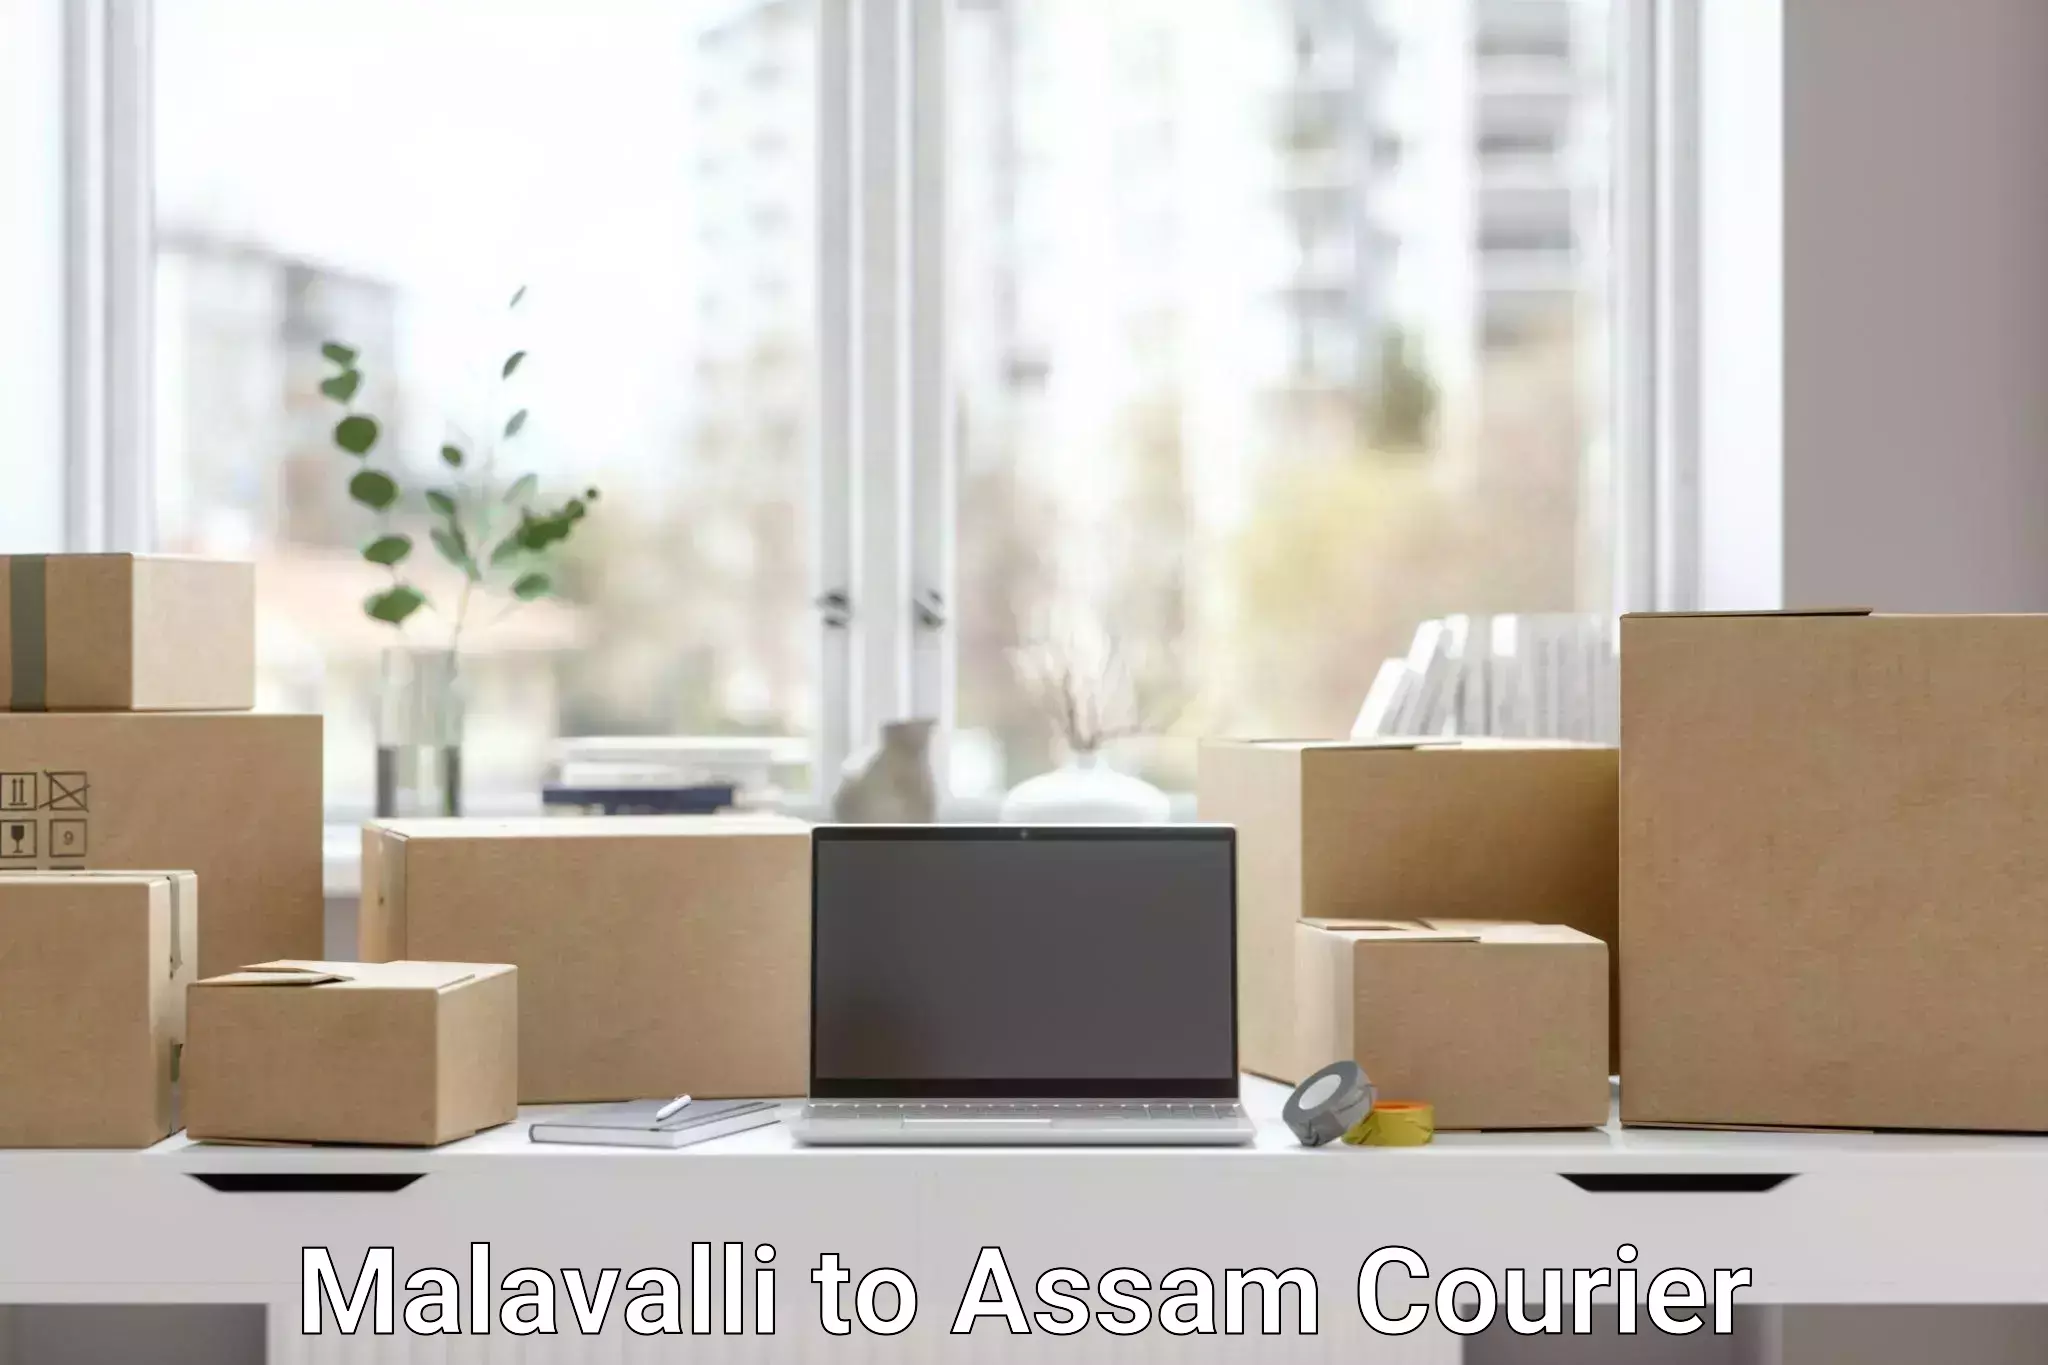 Customer-centric shipping Malavalli to Hailakandi